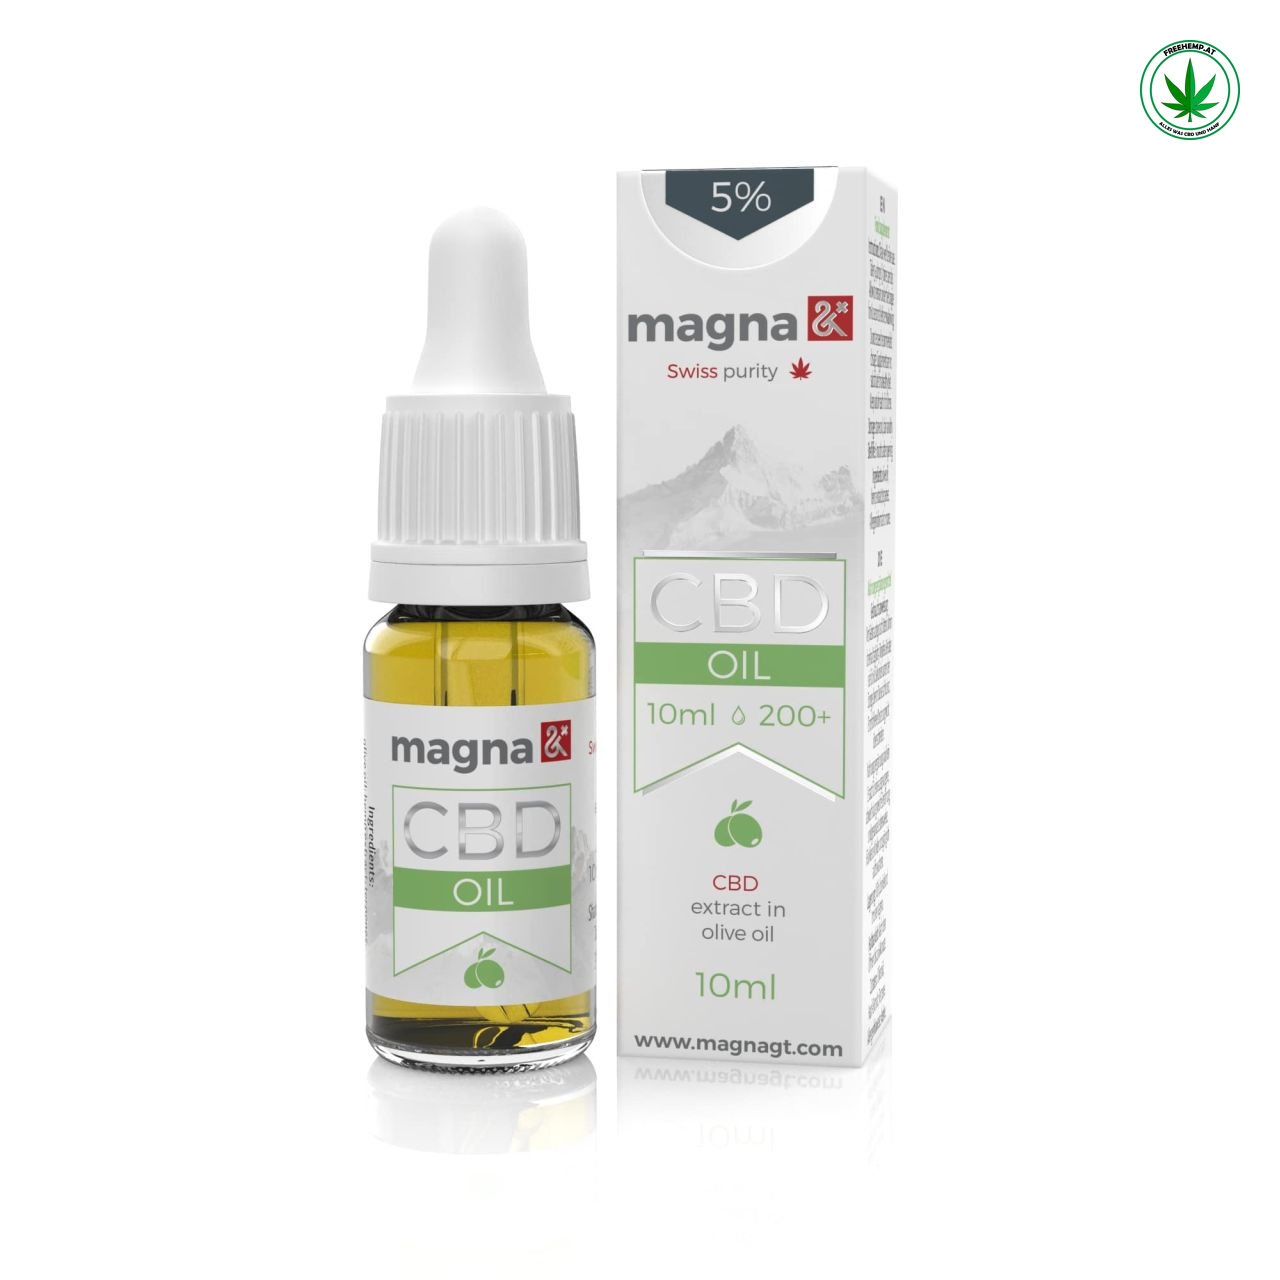 Magna G&T CBD Öl 5% (in Olivenöl) 